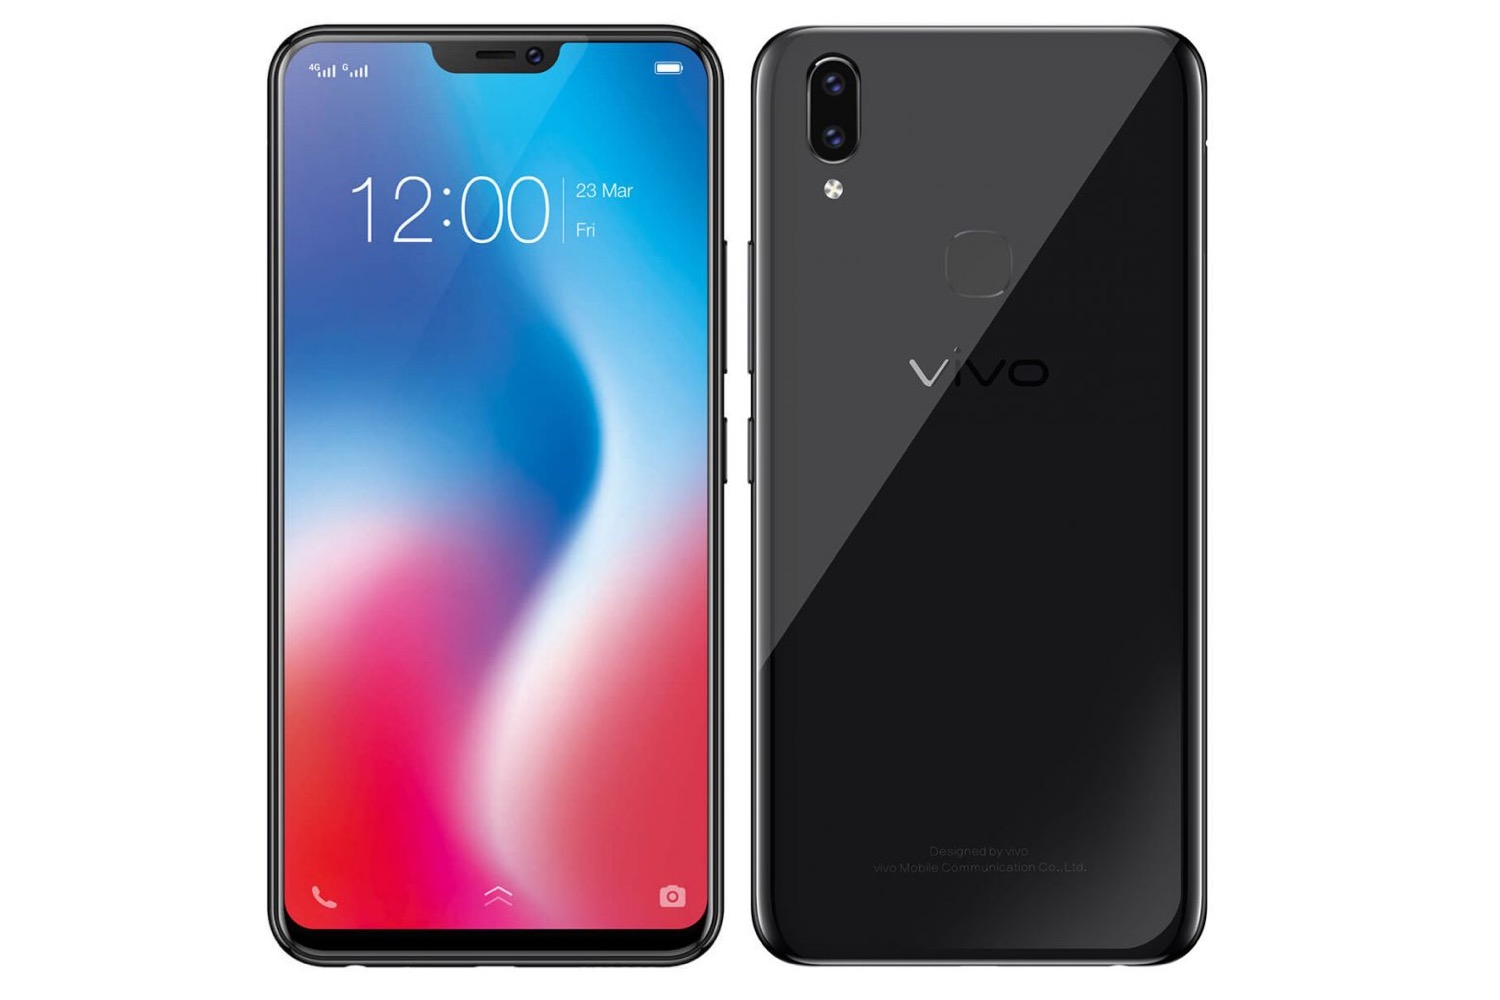 Компания Vivo представила свой новый селфи-смартфон с экраном как у iPhone X